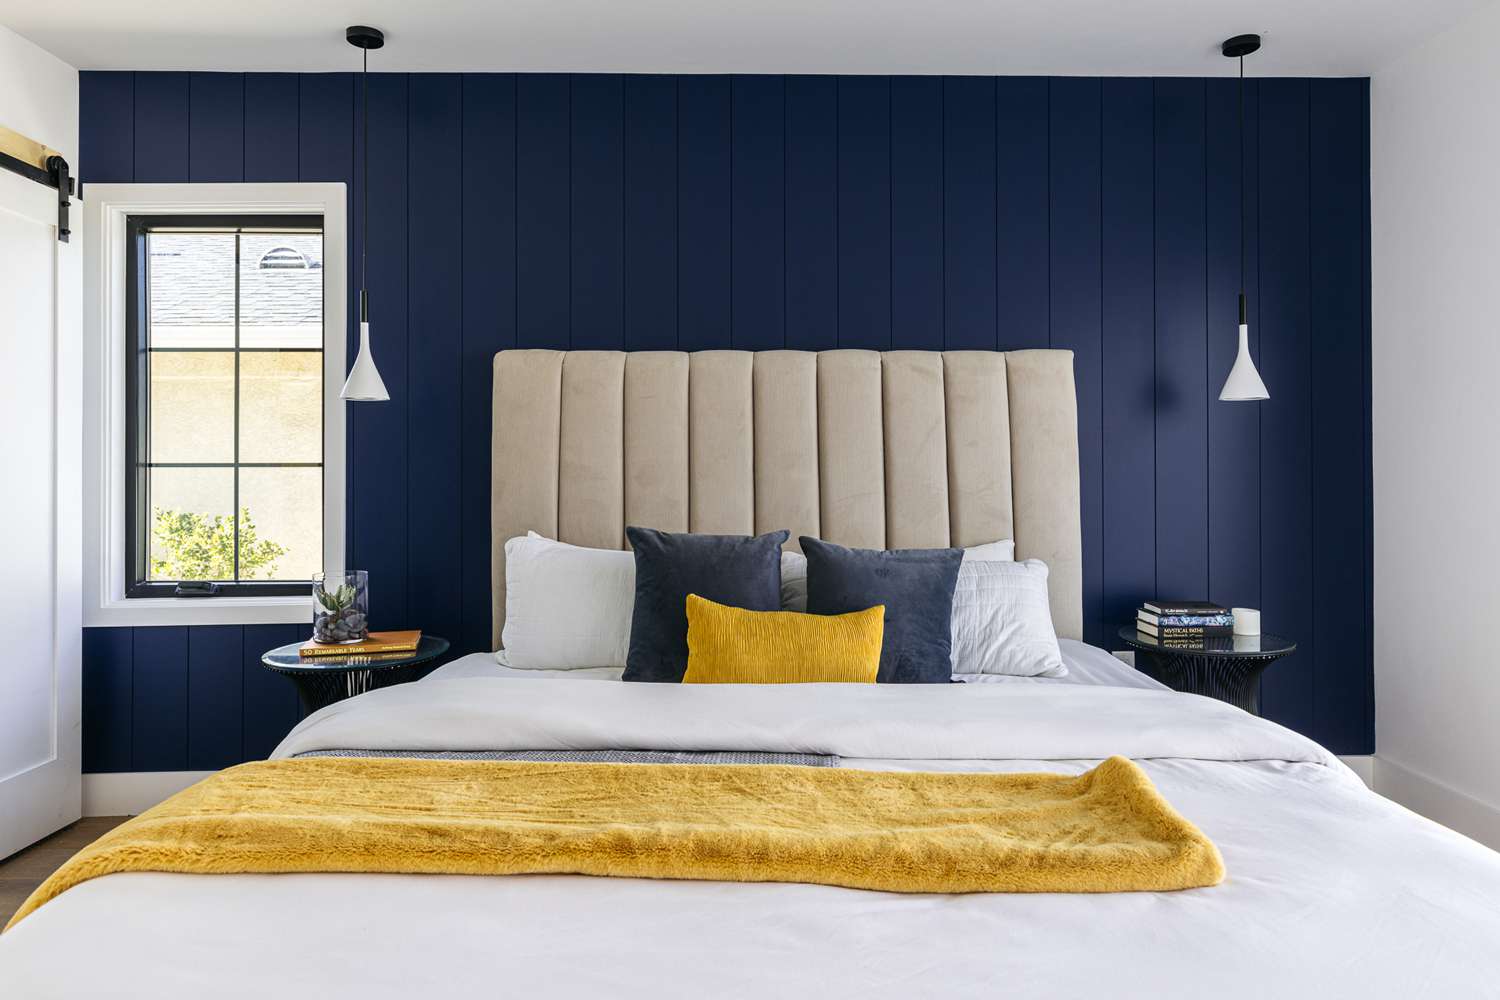 Parede de acento shiplap azul escuro e cobertor amarelo dobrado sobre a cama feita